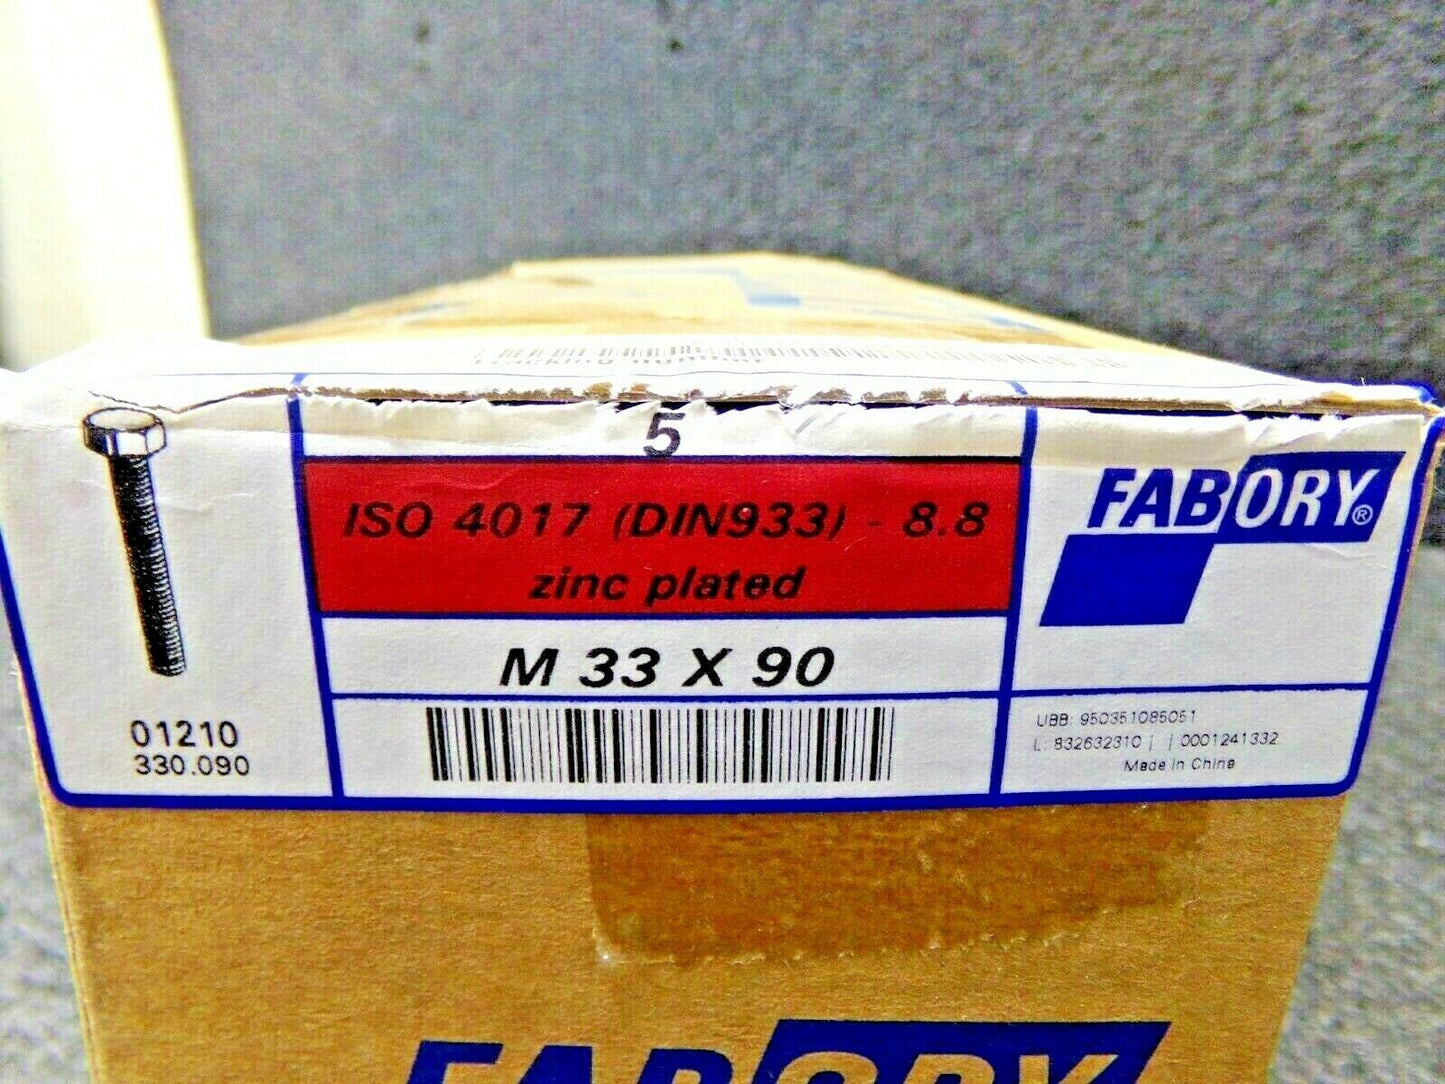 5 HEX HEAD CAP SCREW ISO 4017 STEEL ZINC PLATED 8.8 M33X90 (183778330877-NBT03)